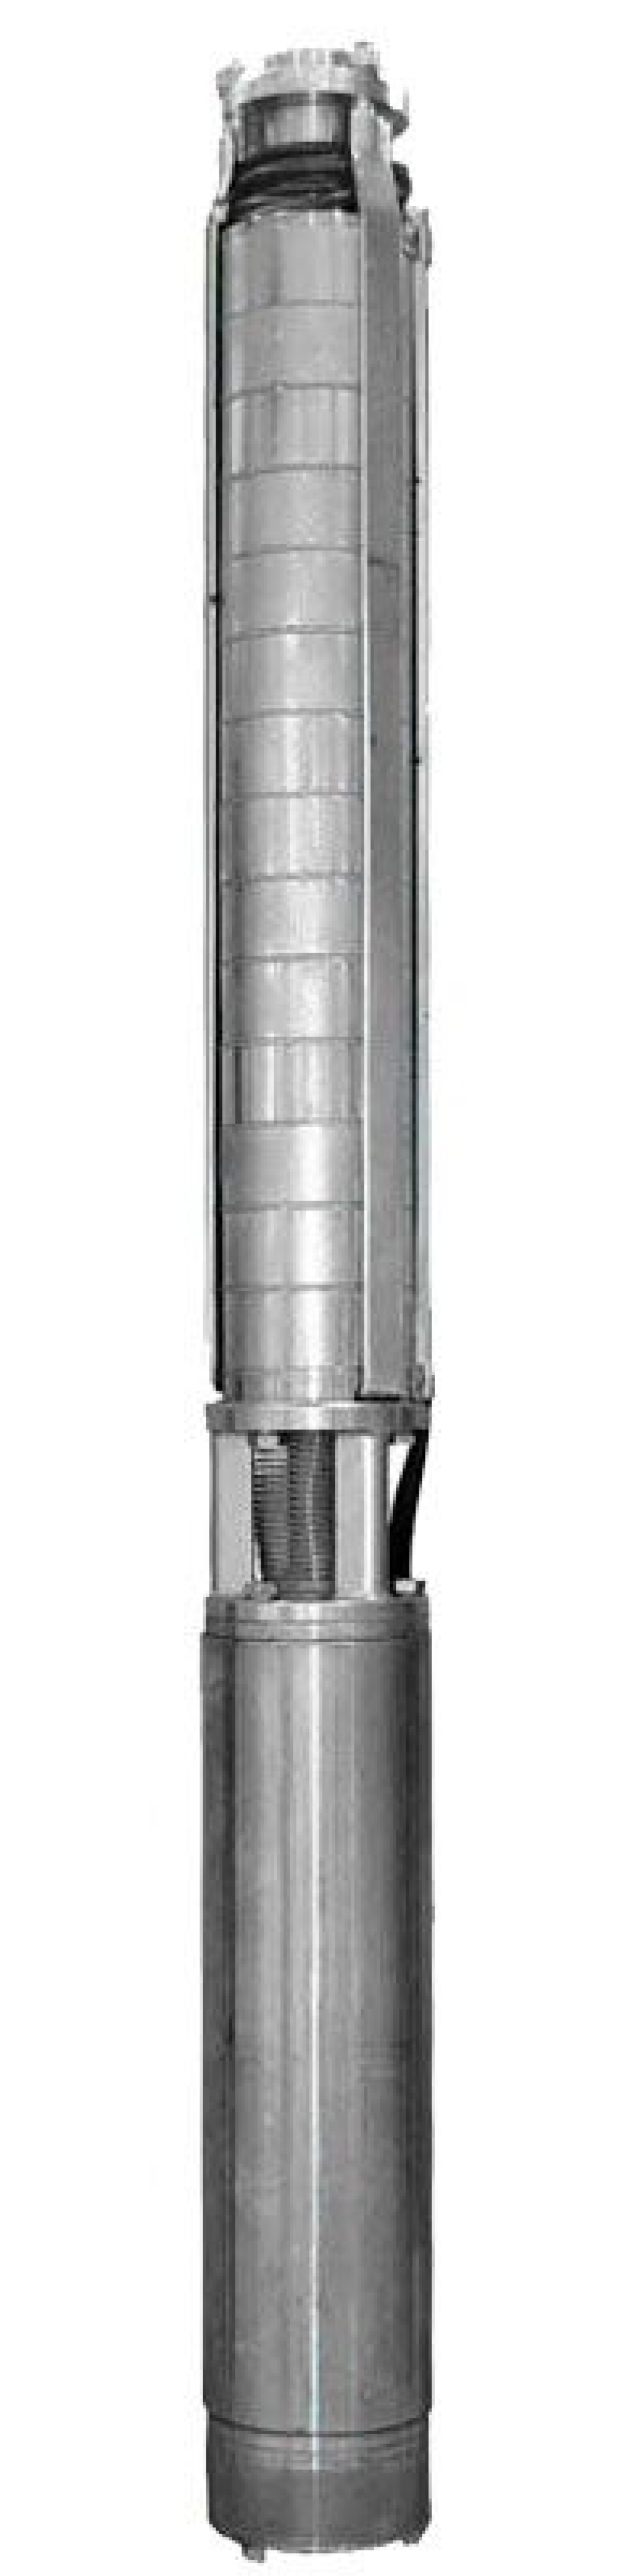 Насос скважинный Ливнынасос ЭЦВ 4-6.5-85 центробежный, производительность 6.5 м3/час, напор 85 м, мощность 3 кВт, напряжение трехфазной сети 380В